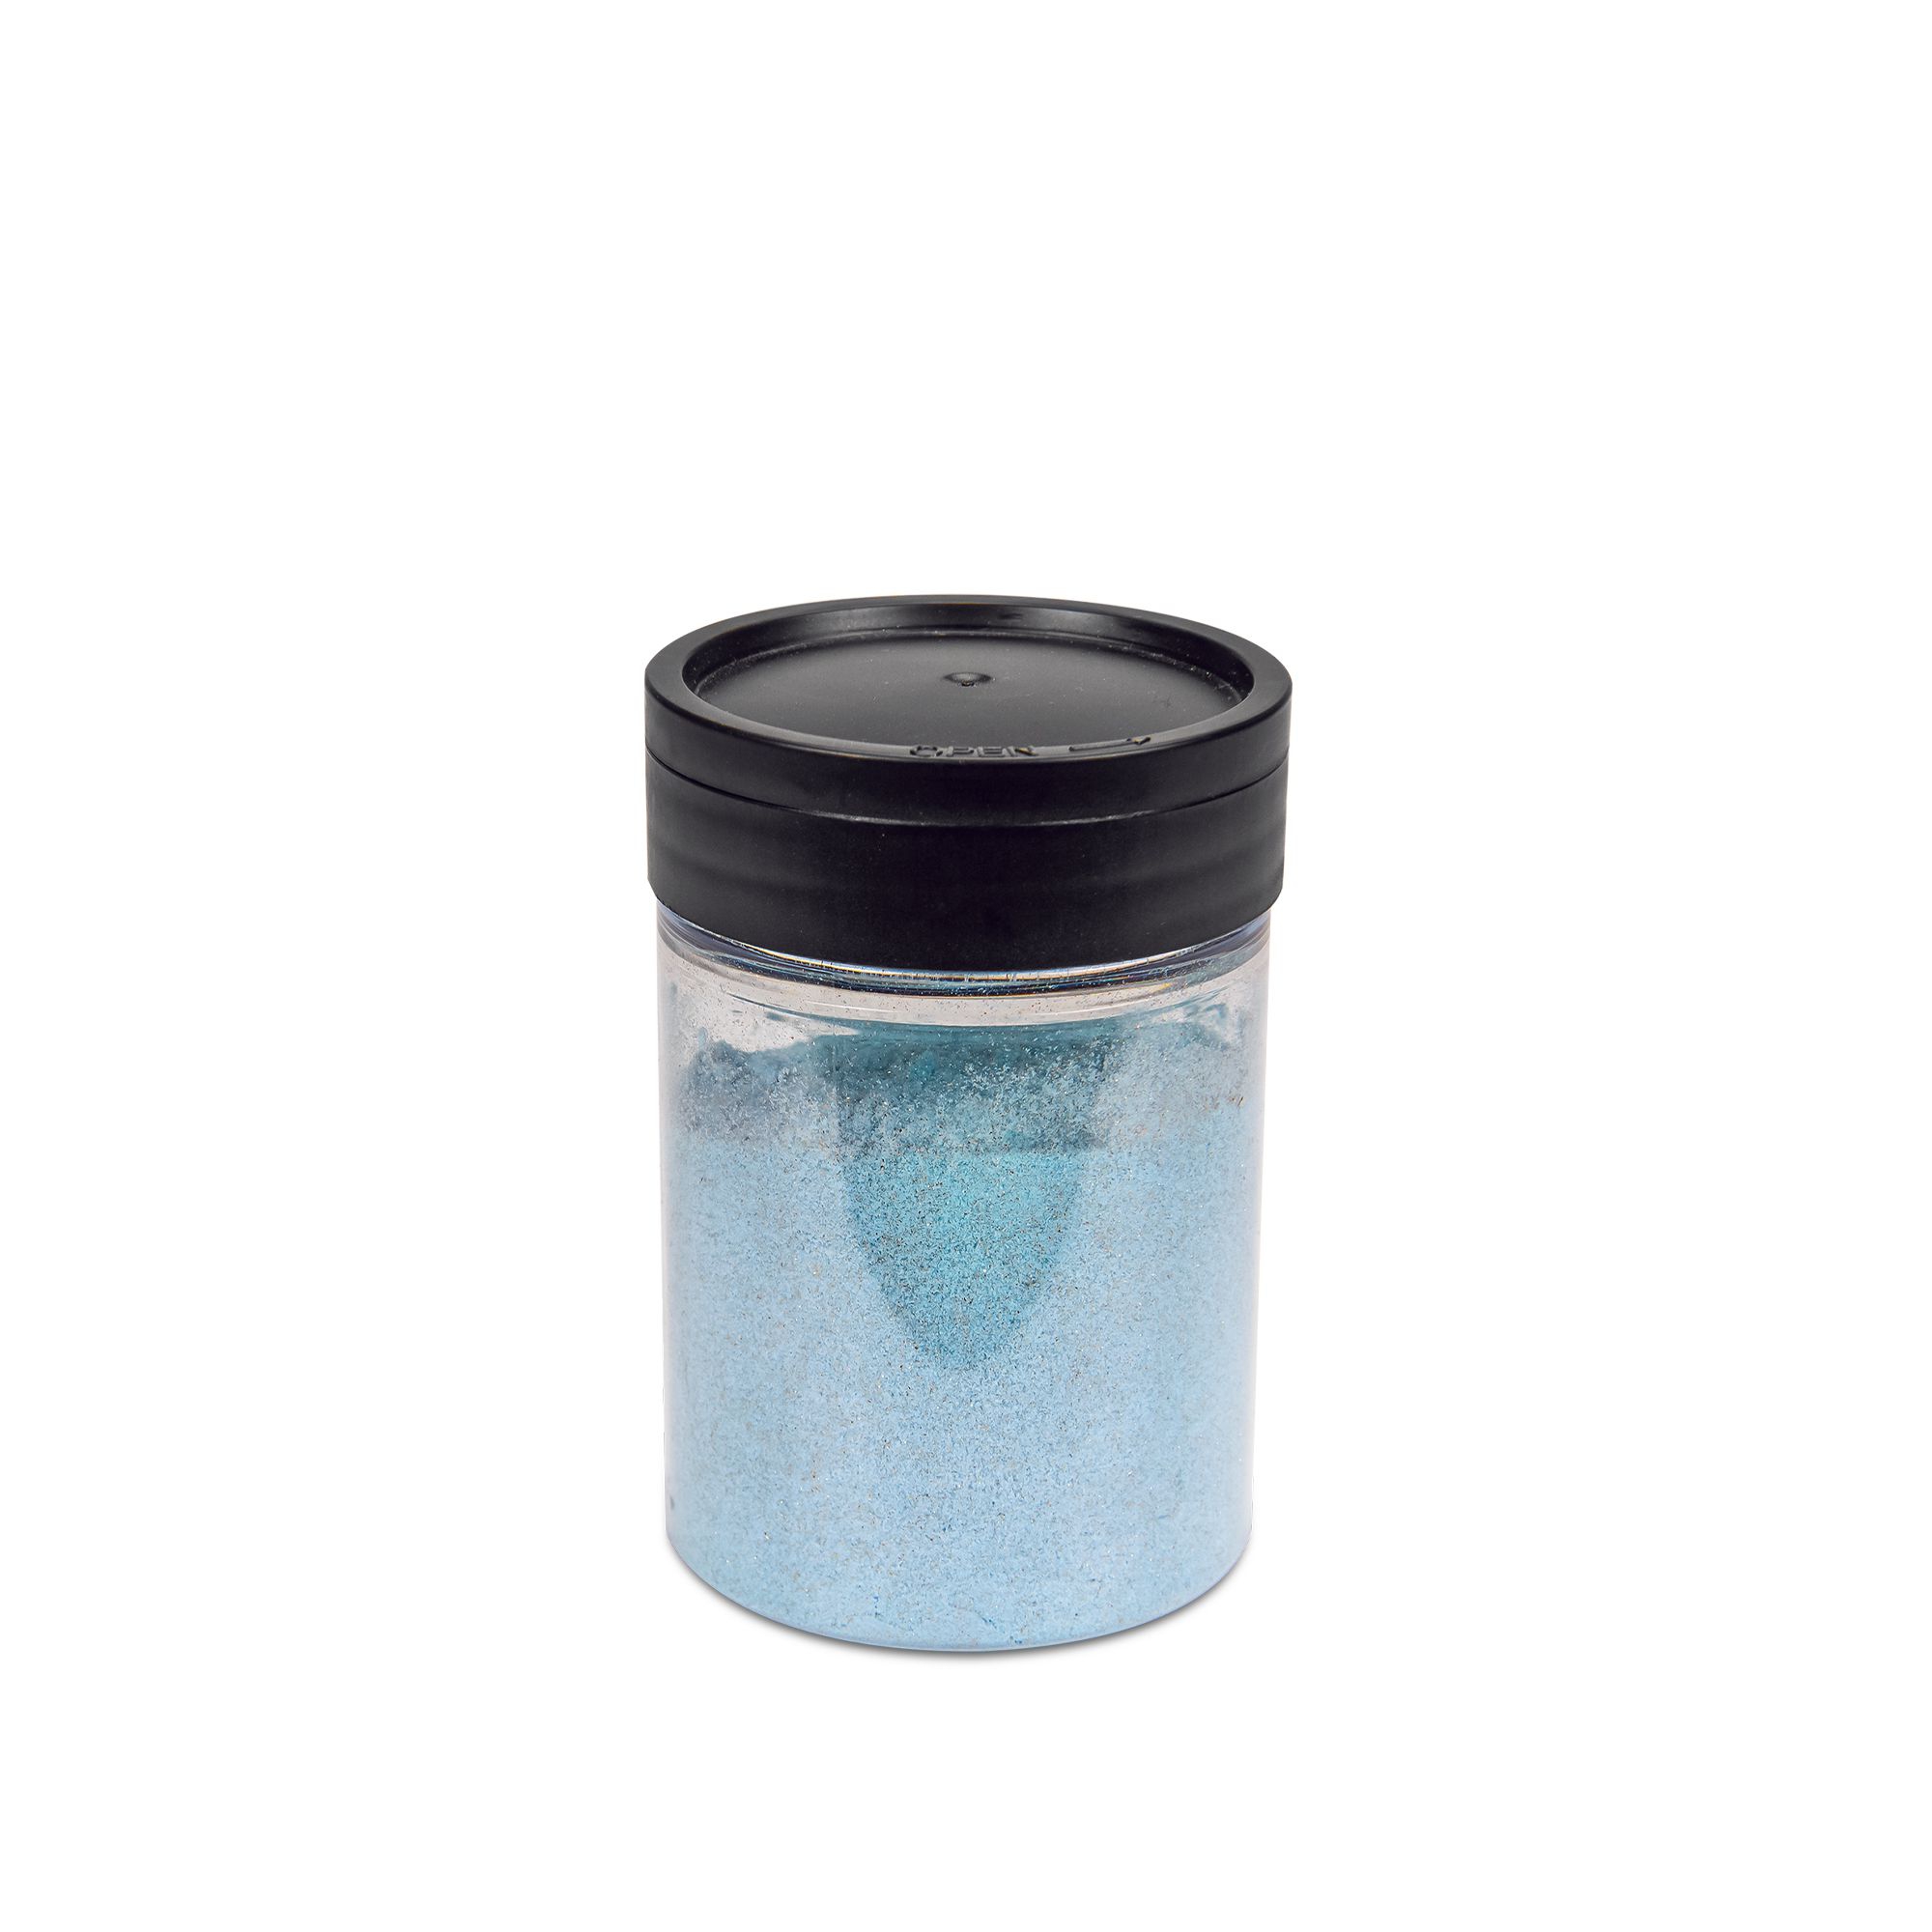 Städter - Essbarer Streudekor Diamond DustPuder Blau(50g)